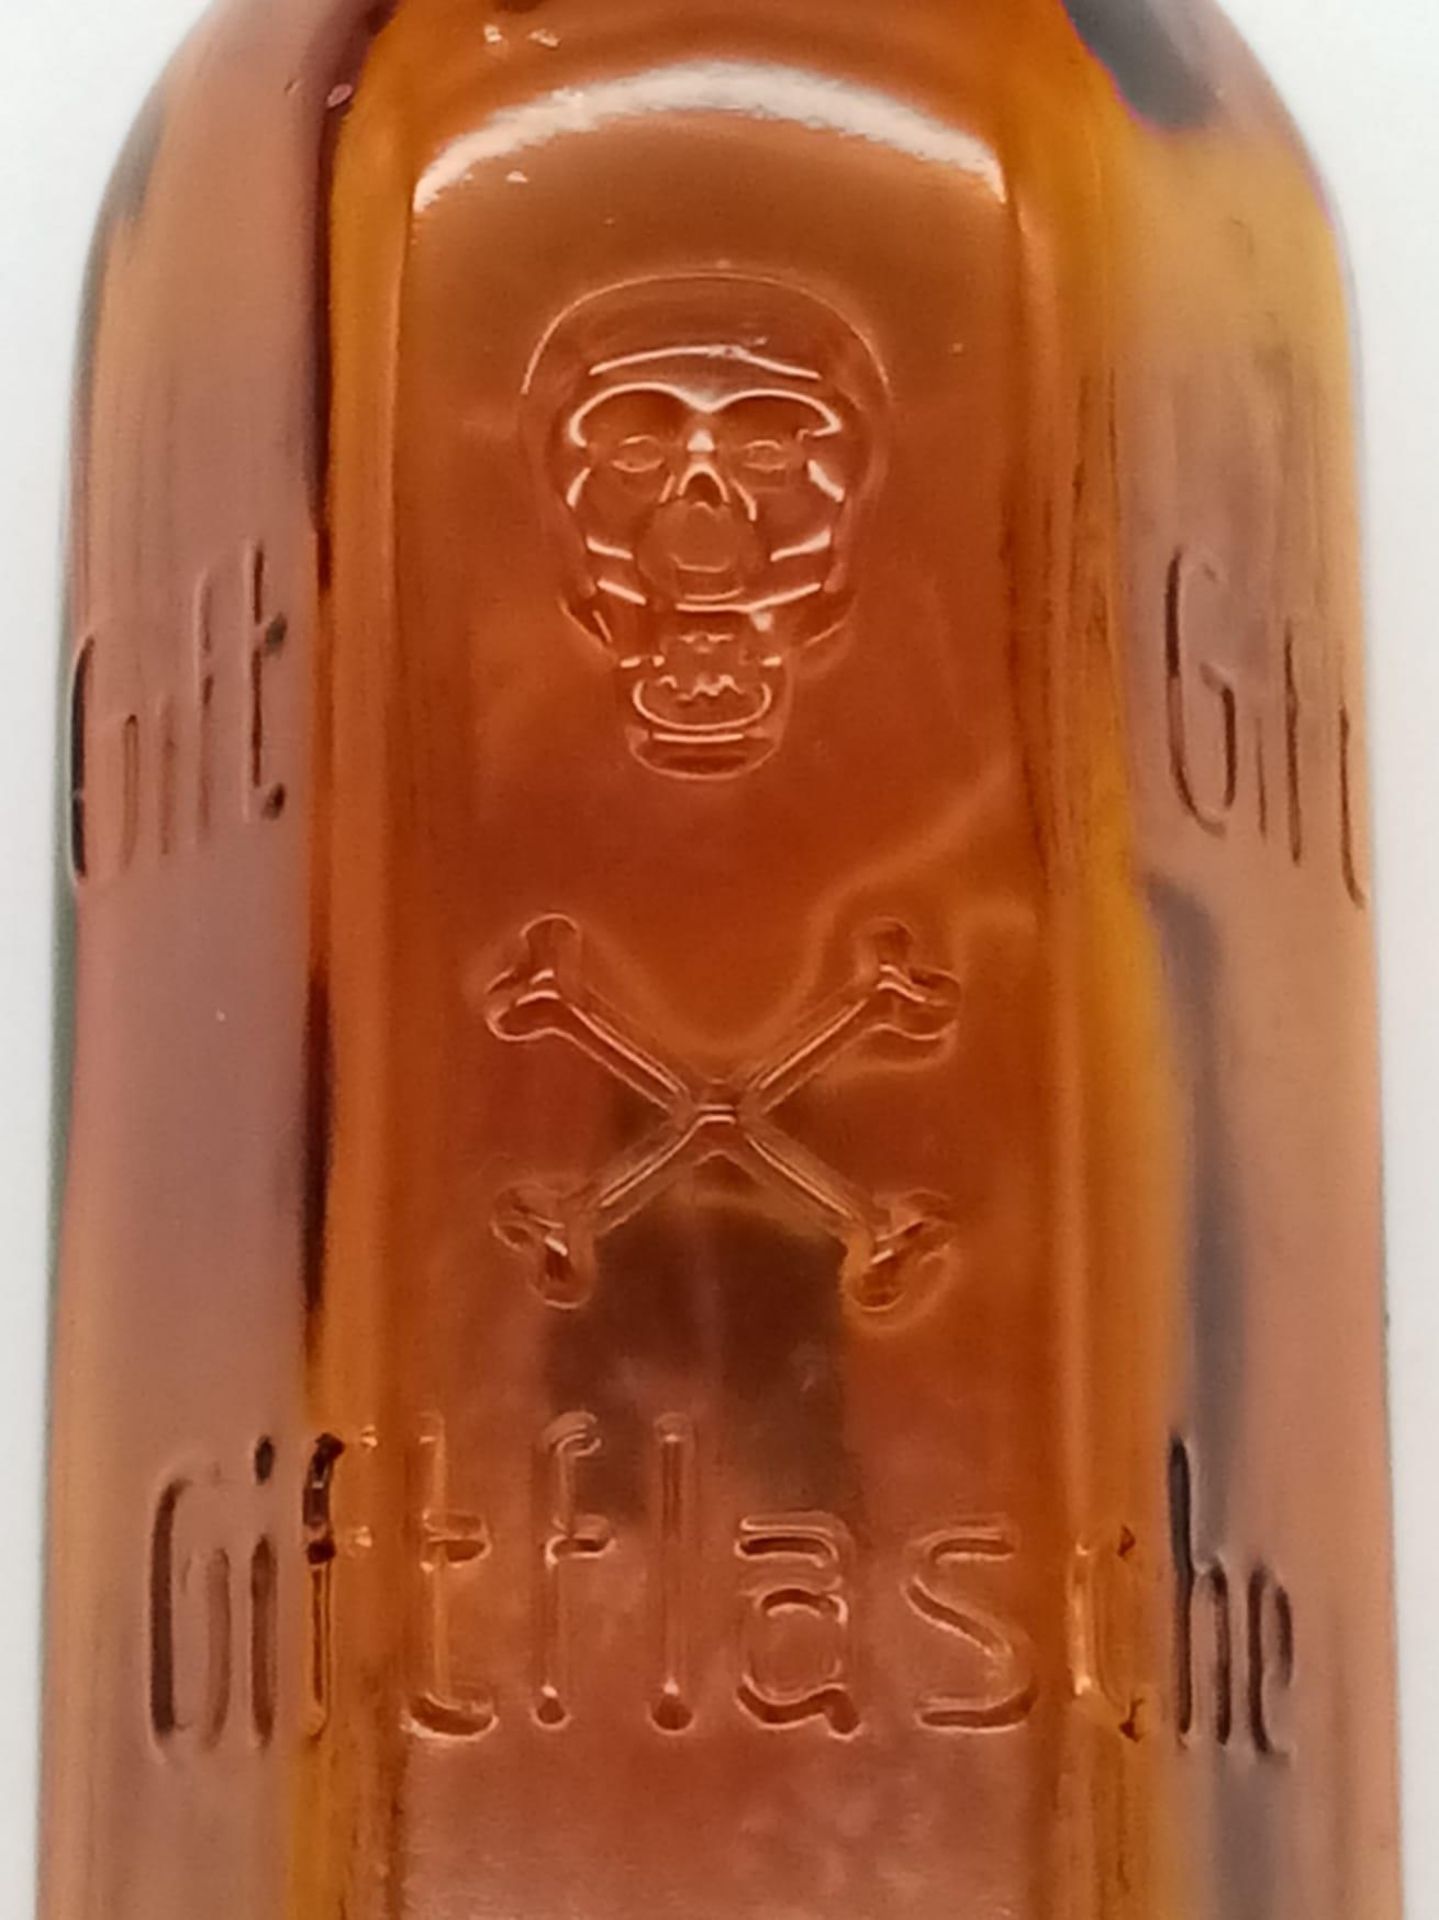 WW2 German Waffen SS Poison Bottle. Marke “Gift” - Bild 3 aus 7